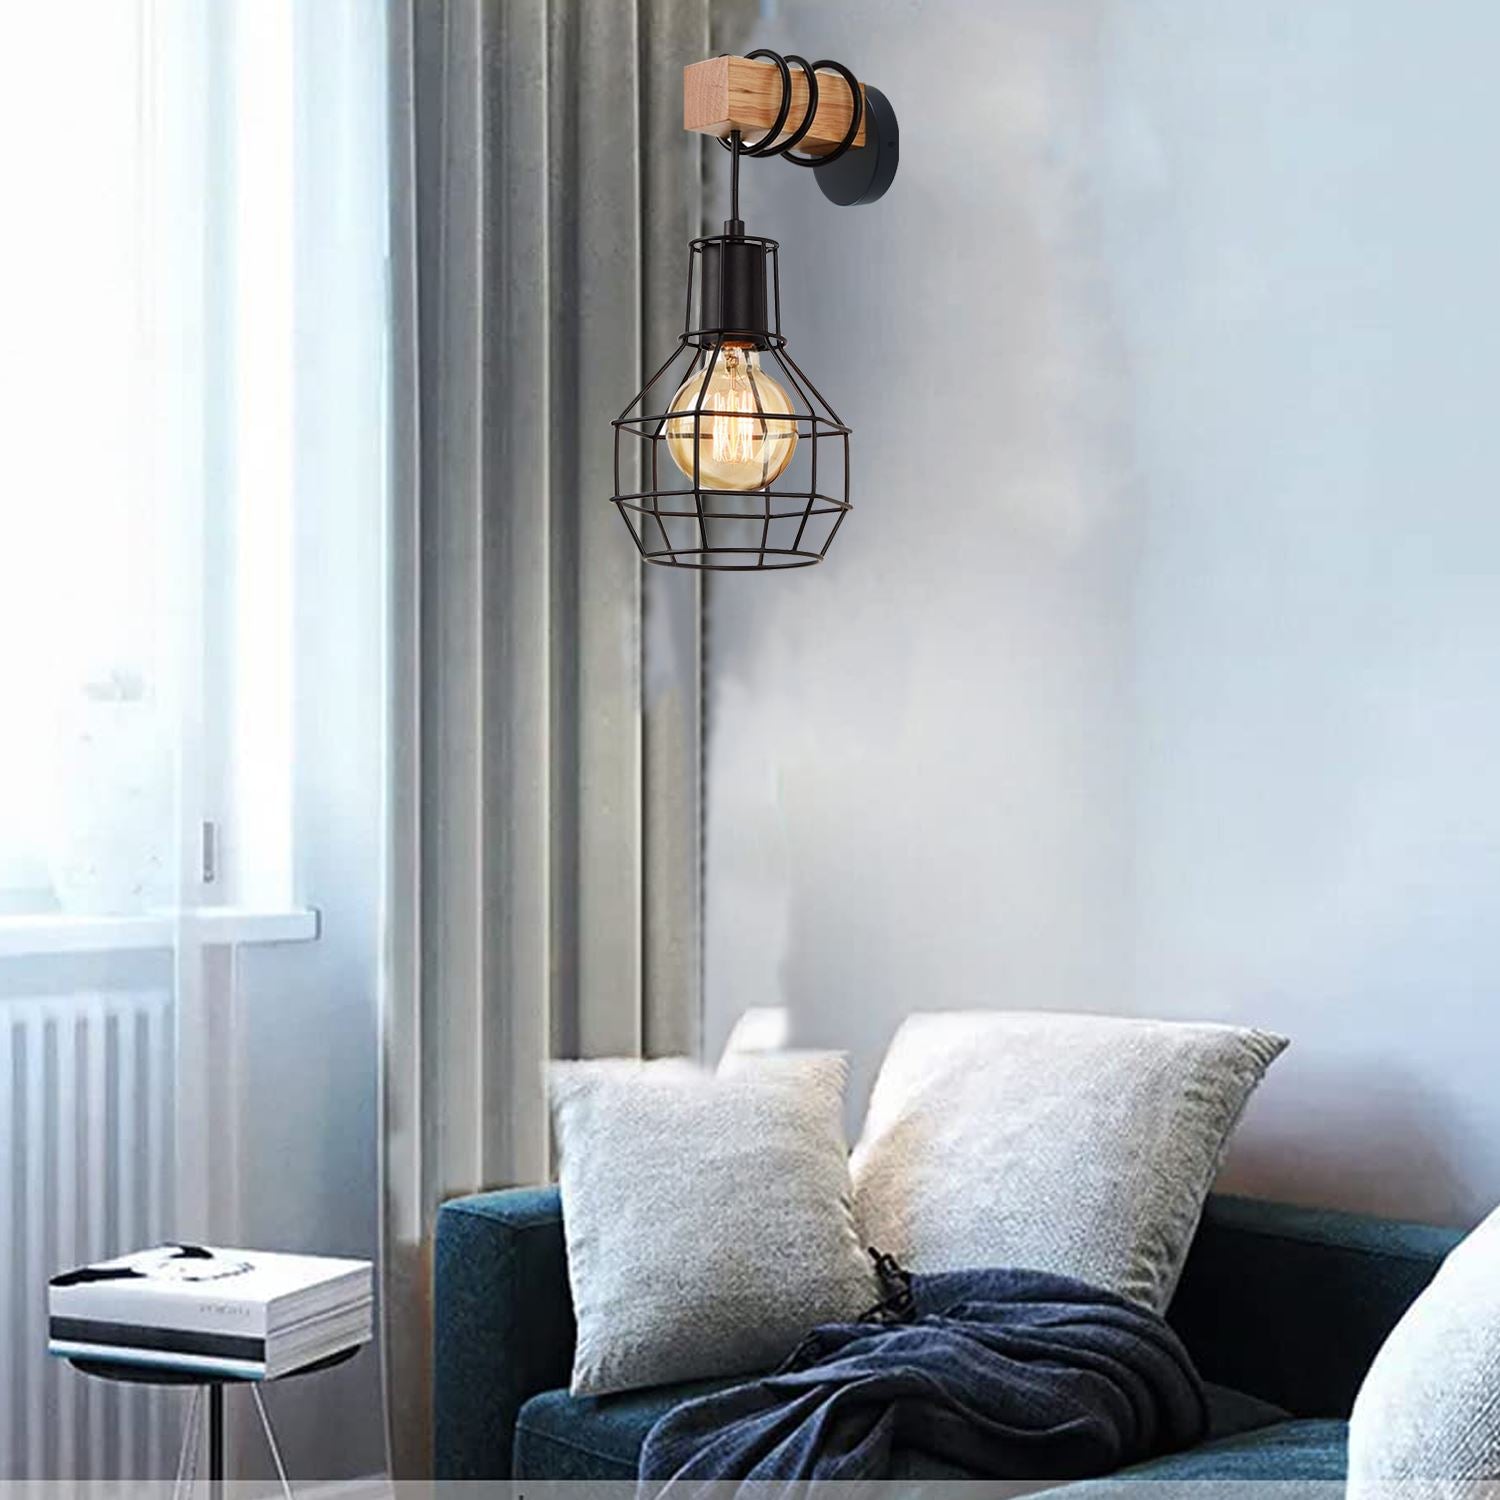 hanging wall light for living room.jpg